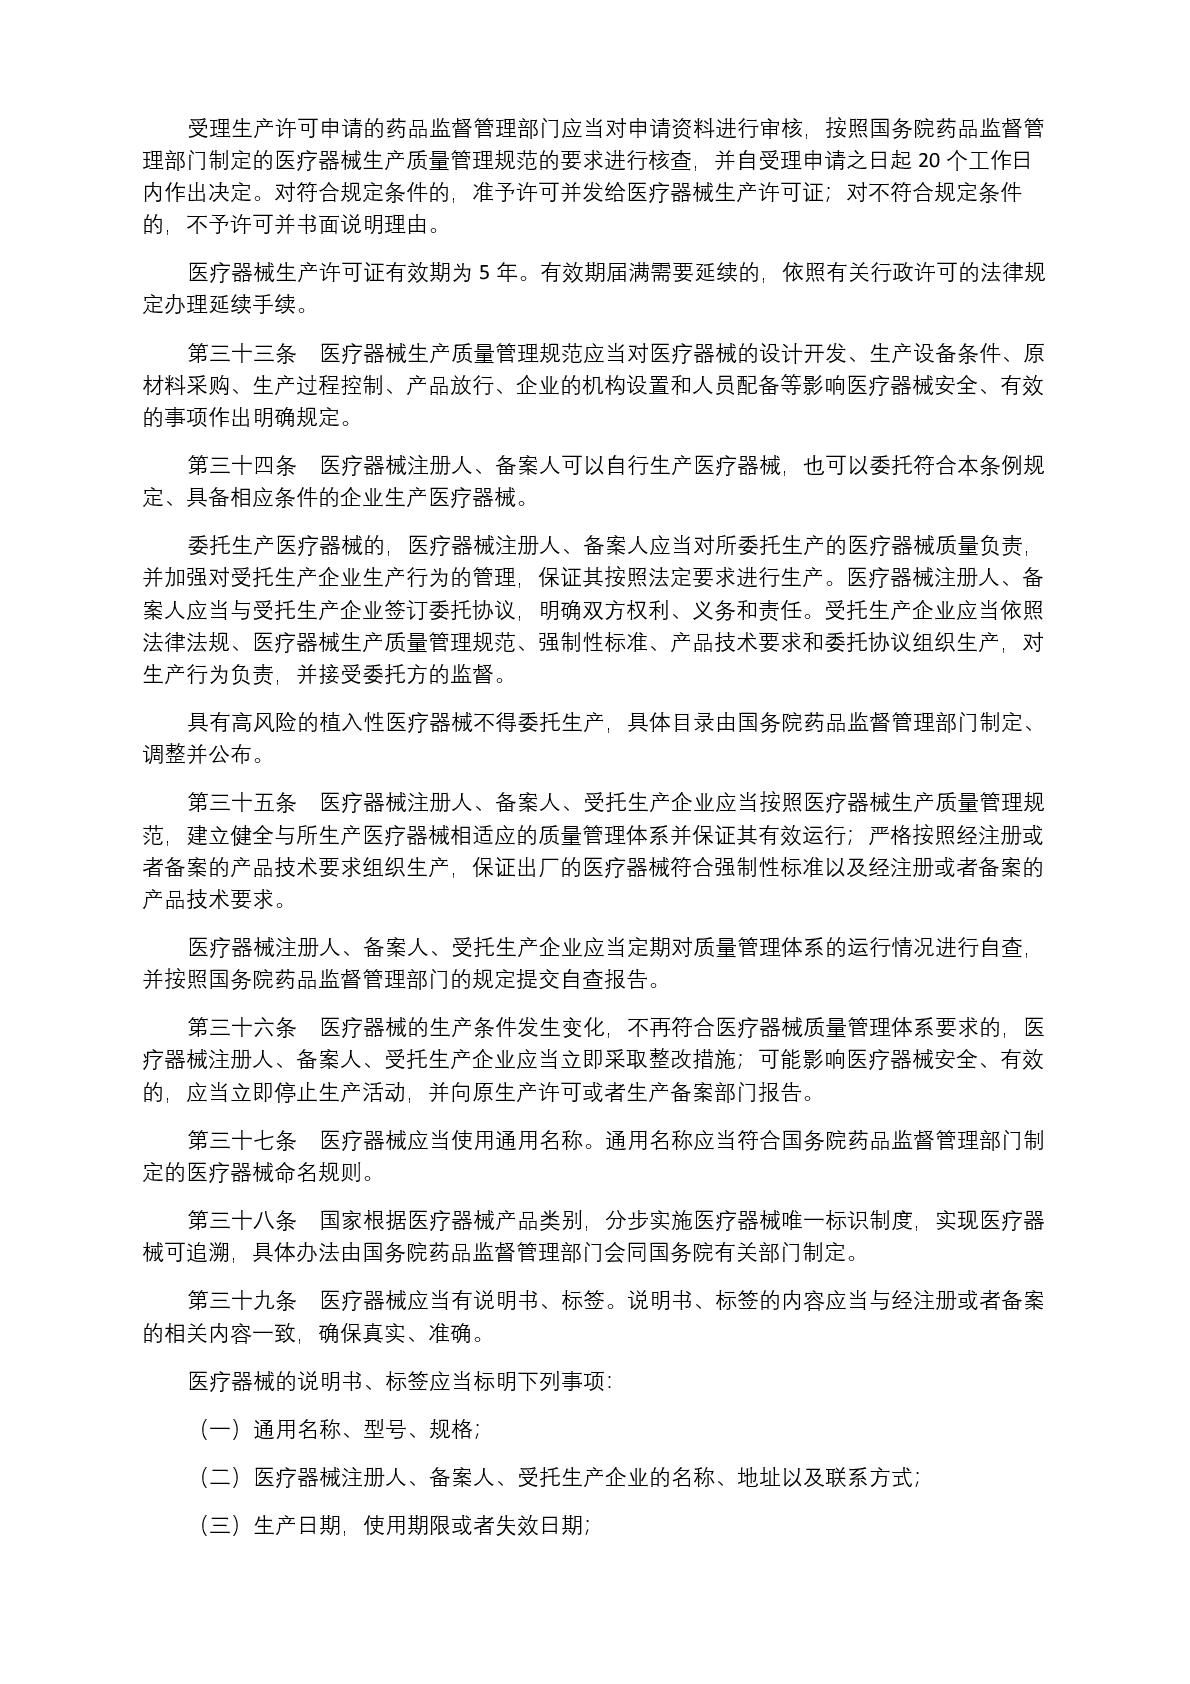 中华人民共和国国务院令第739号(1) (1)-007.jpg